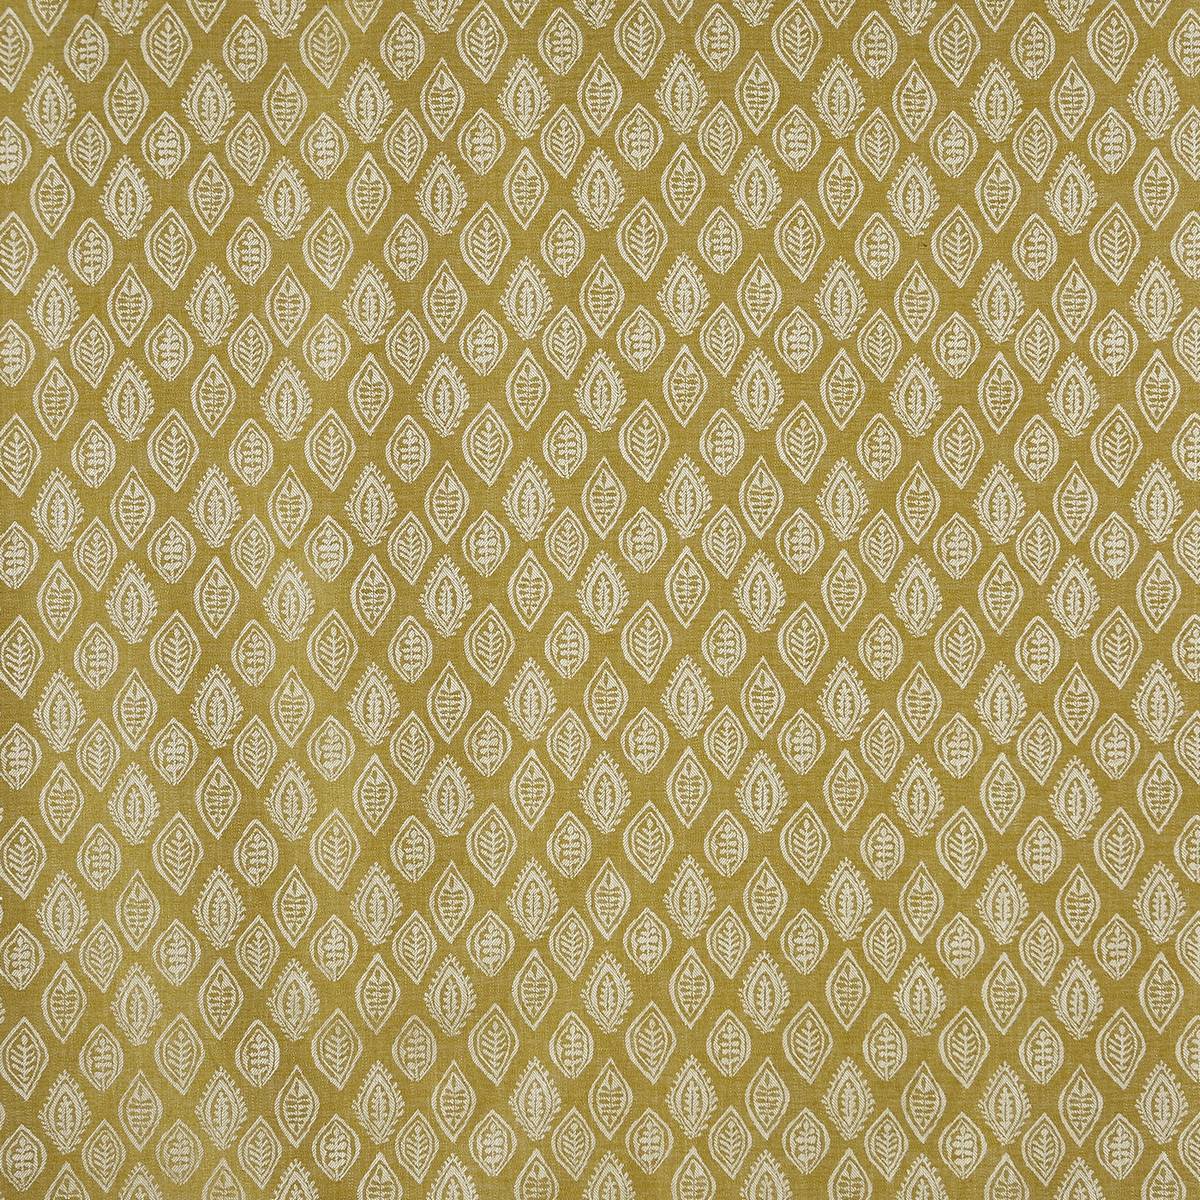 Millgate Kiwi Fabric by Prestigious Textiles